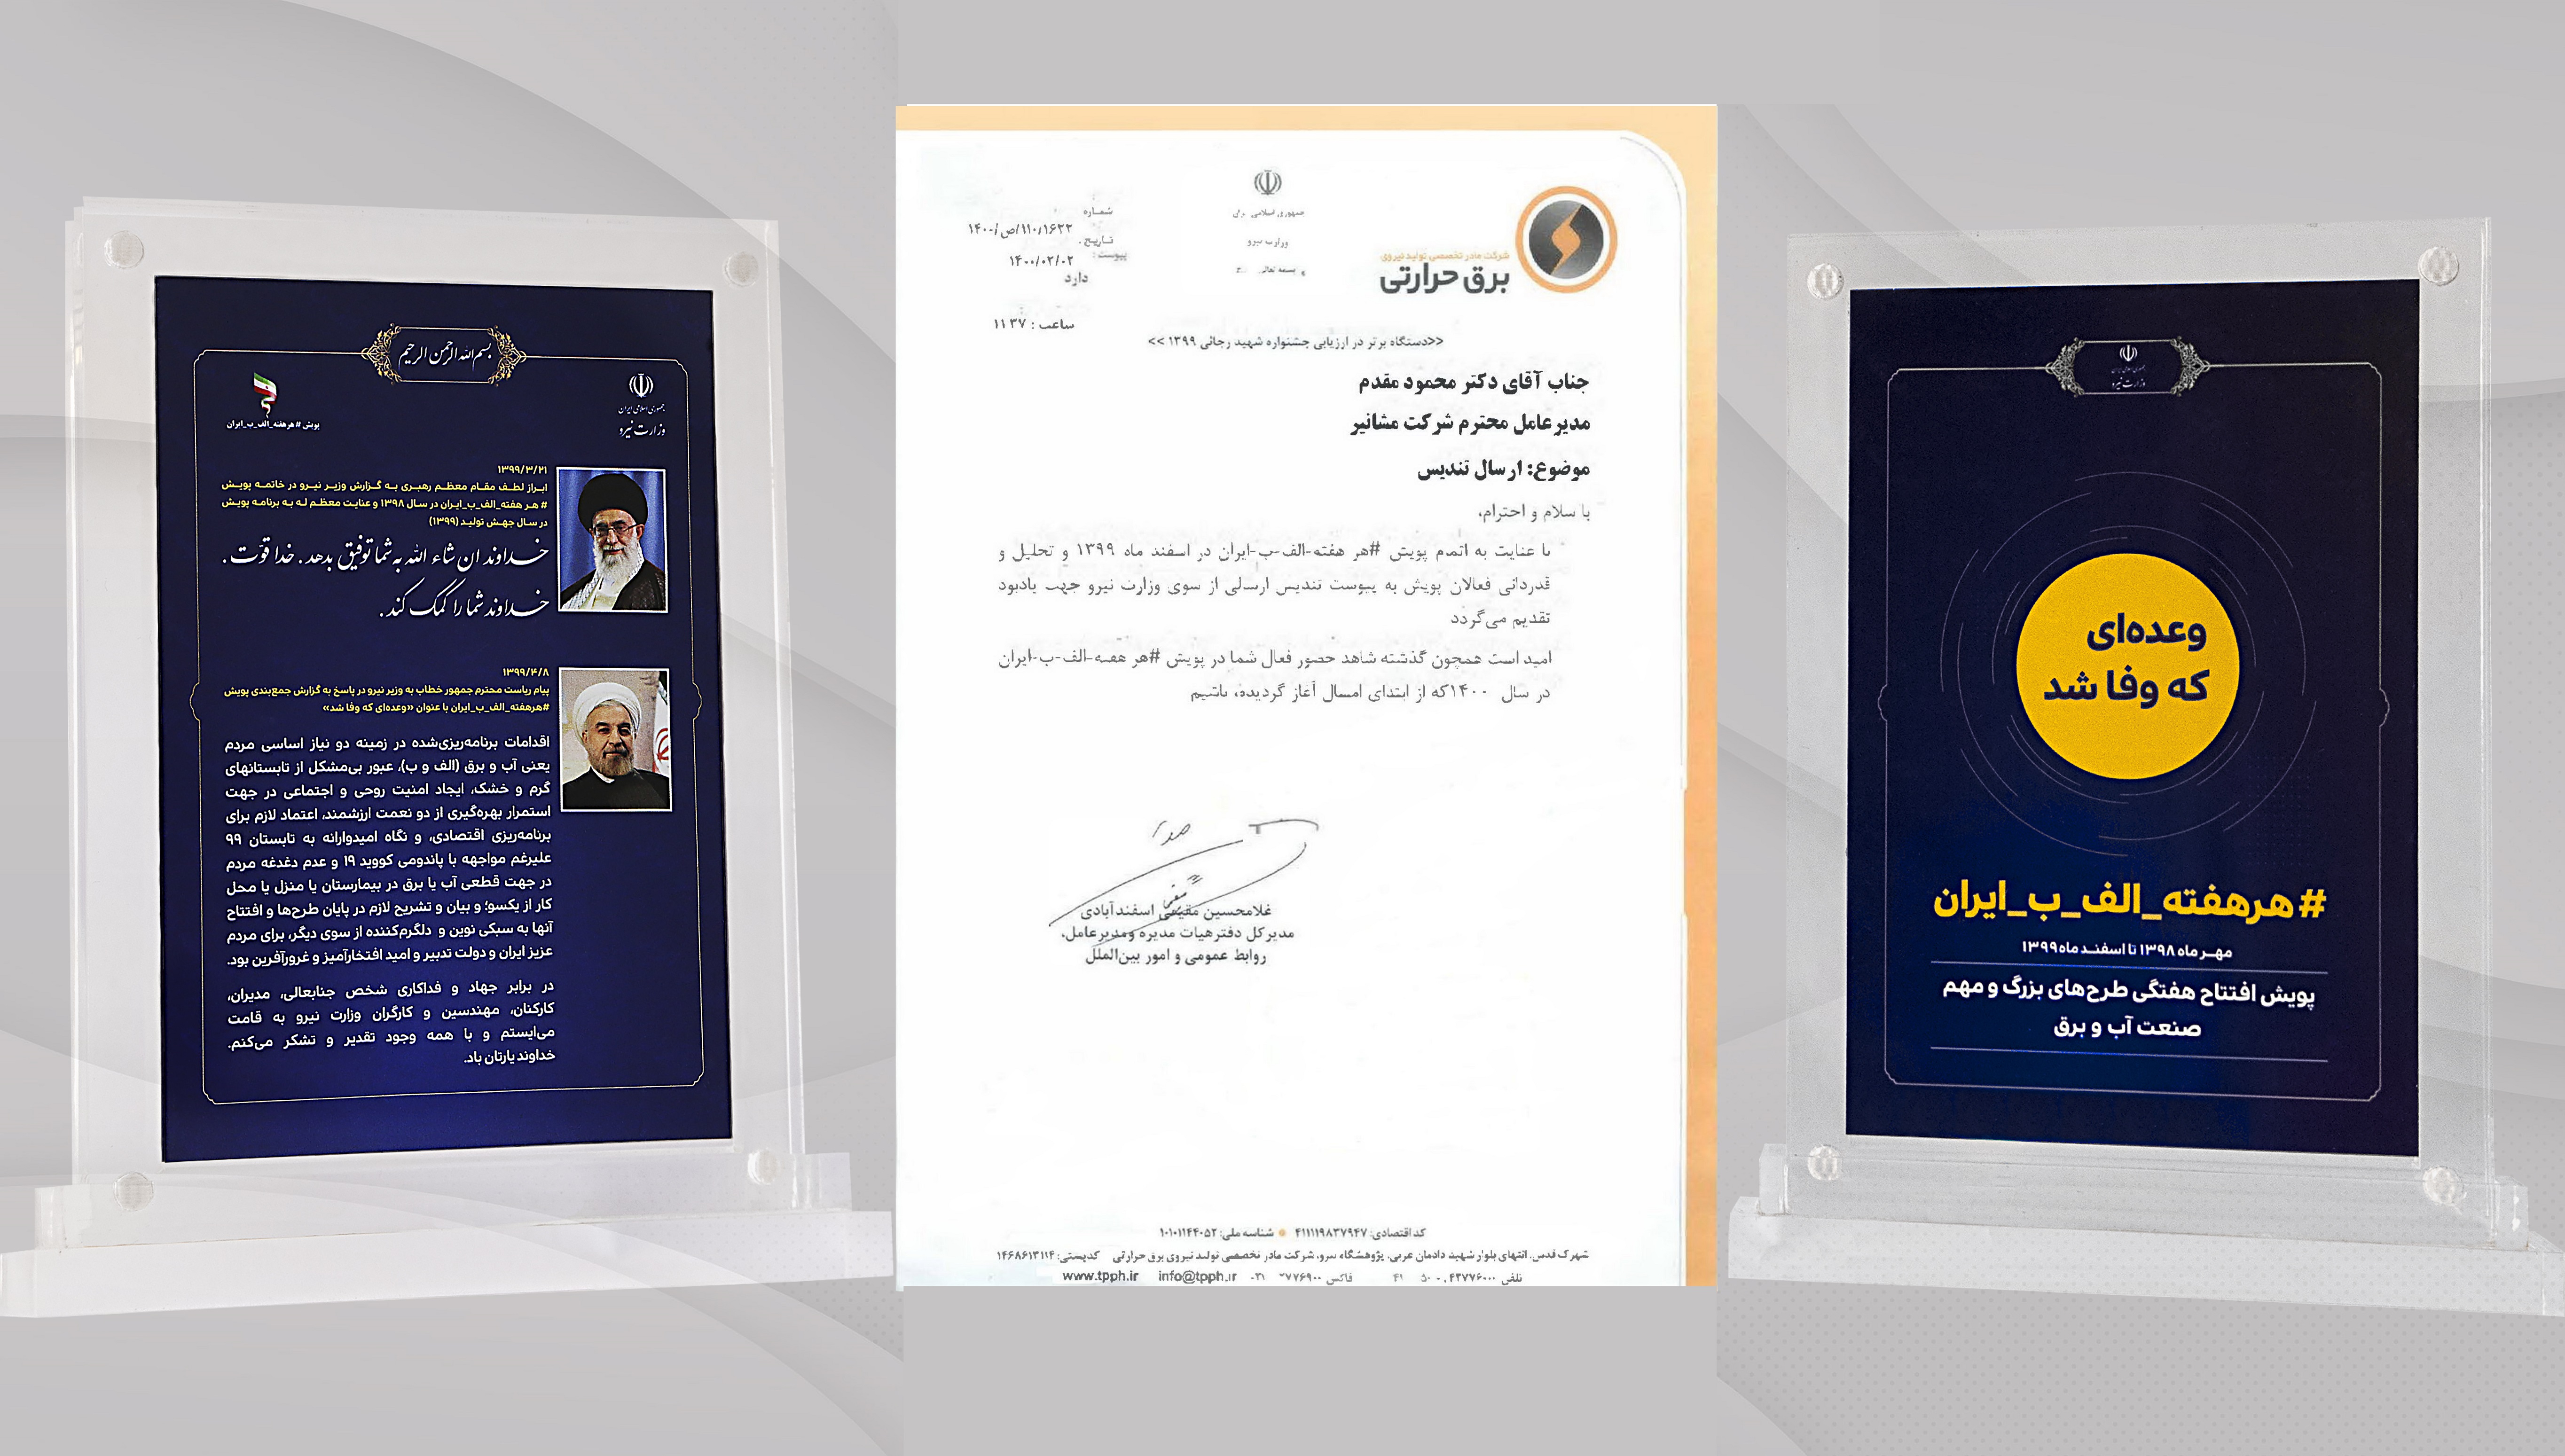 ارسال تندیس تجلیل از فعالان پویش #هر_هفته_الف_ب_ایران از طرف وزارت نیرو و شرکت برق حرارتی